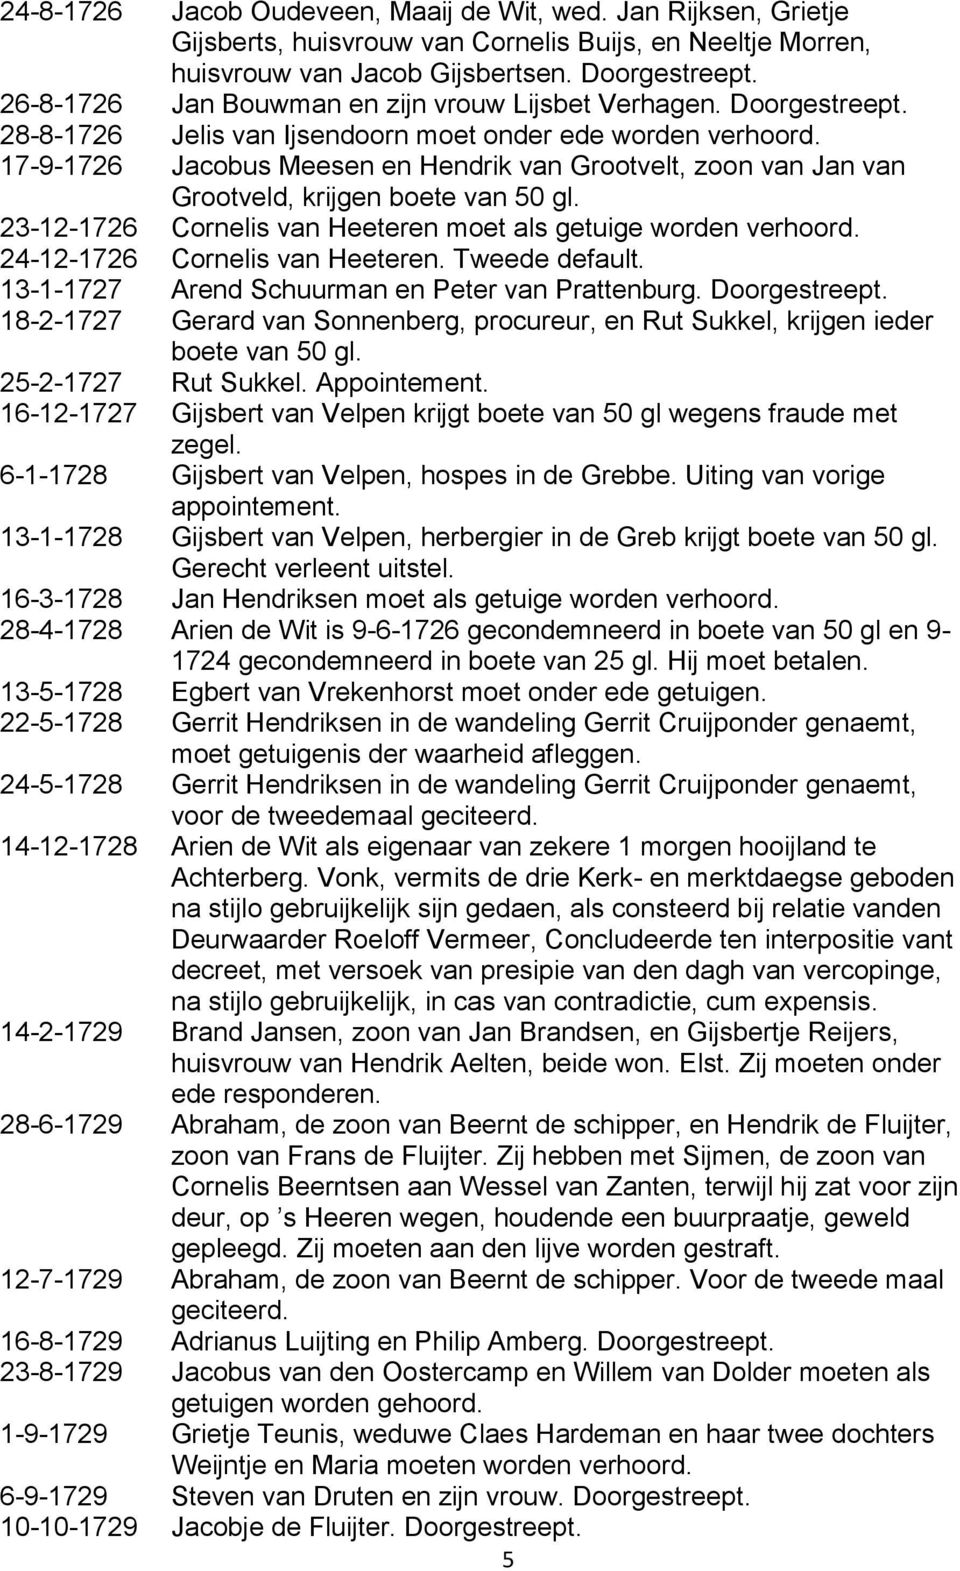 17-9-1726 Jacobus Meesen en Hendrik van Grootvelt, zoon van Jan van Grootveld, krijgen boete van 50 gl. 23-12-1726 Cornelis van Heeteren moet als getuige worden verhoord.